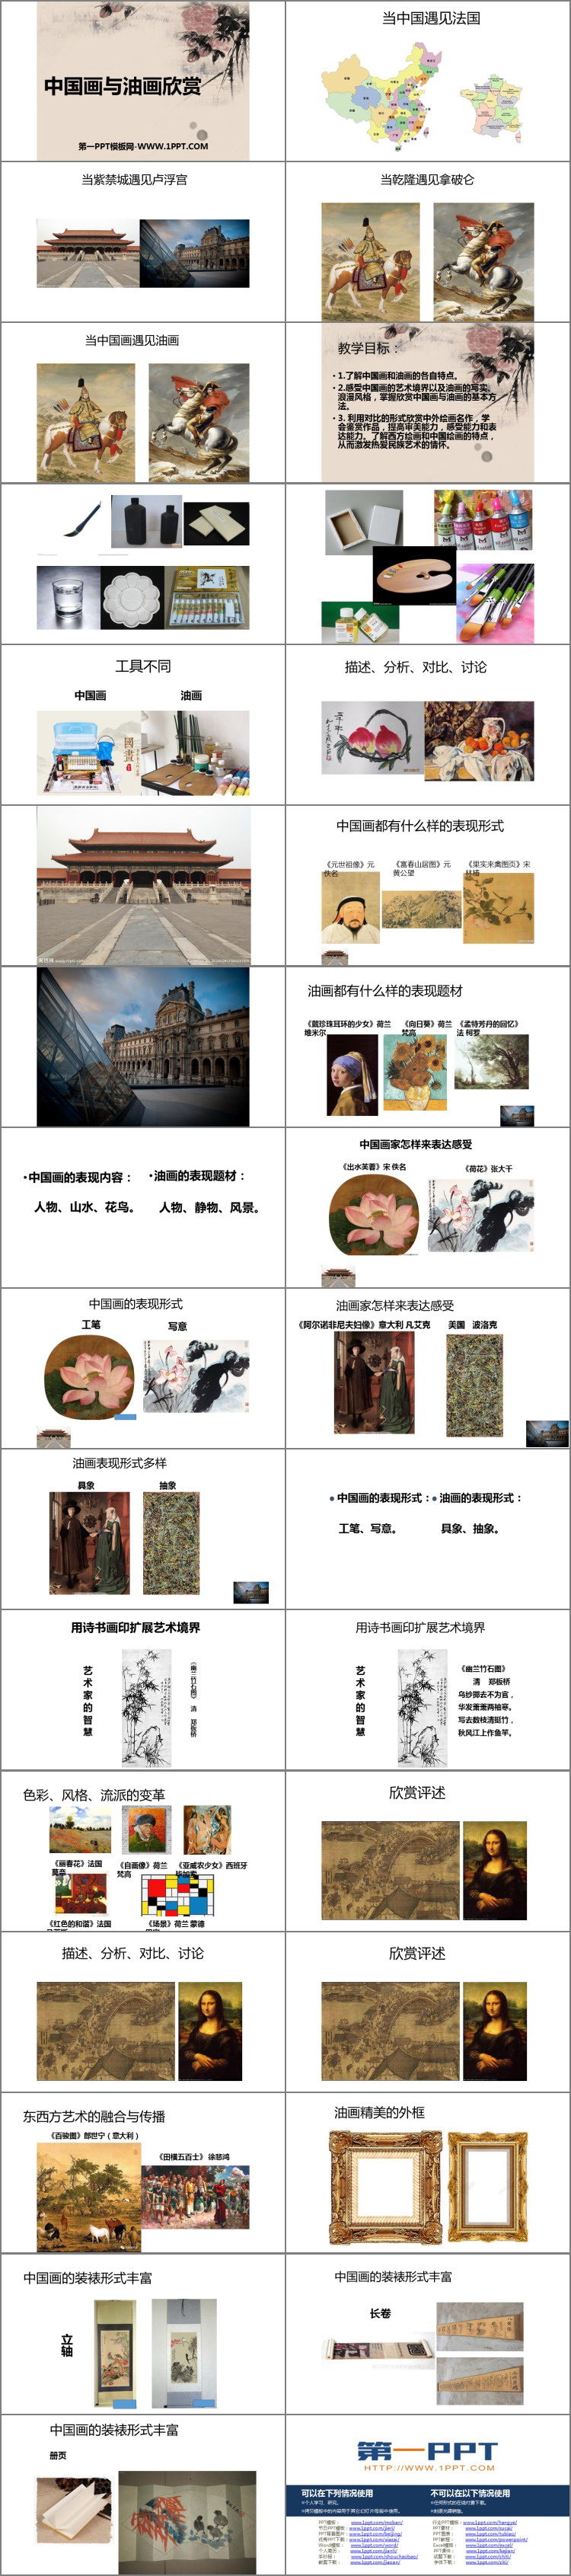 《中国画与油画欣赏》PPT课件下载